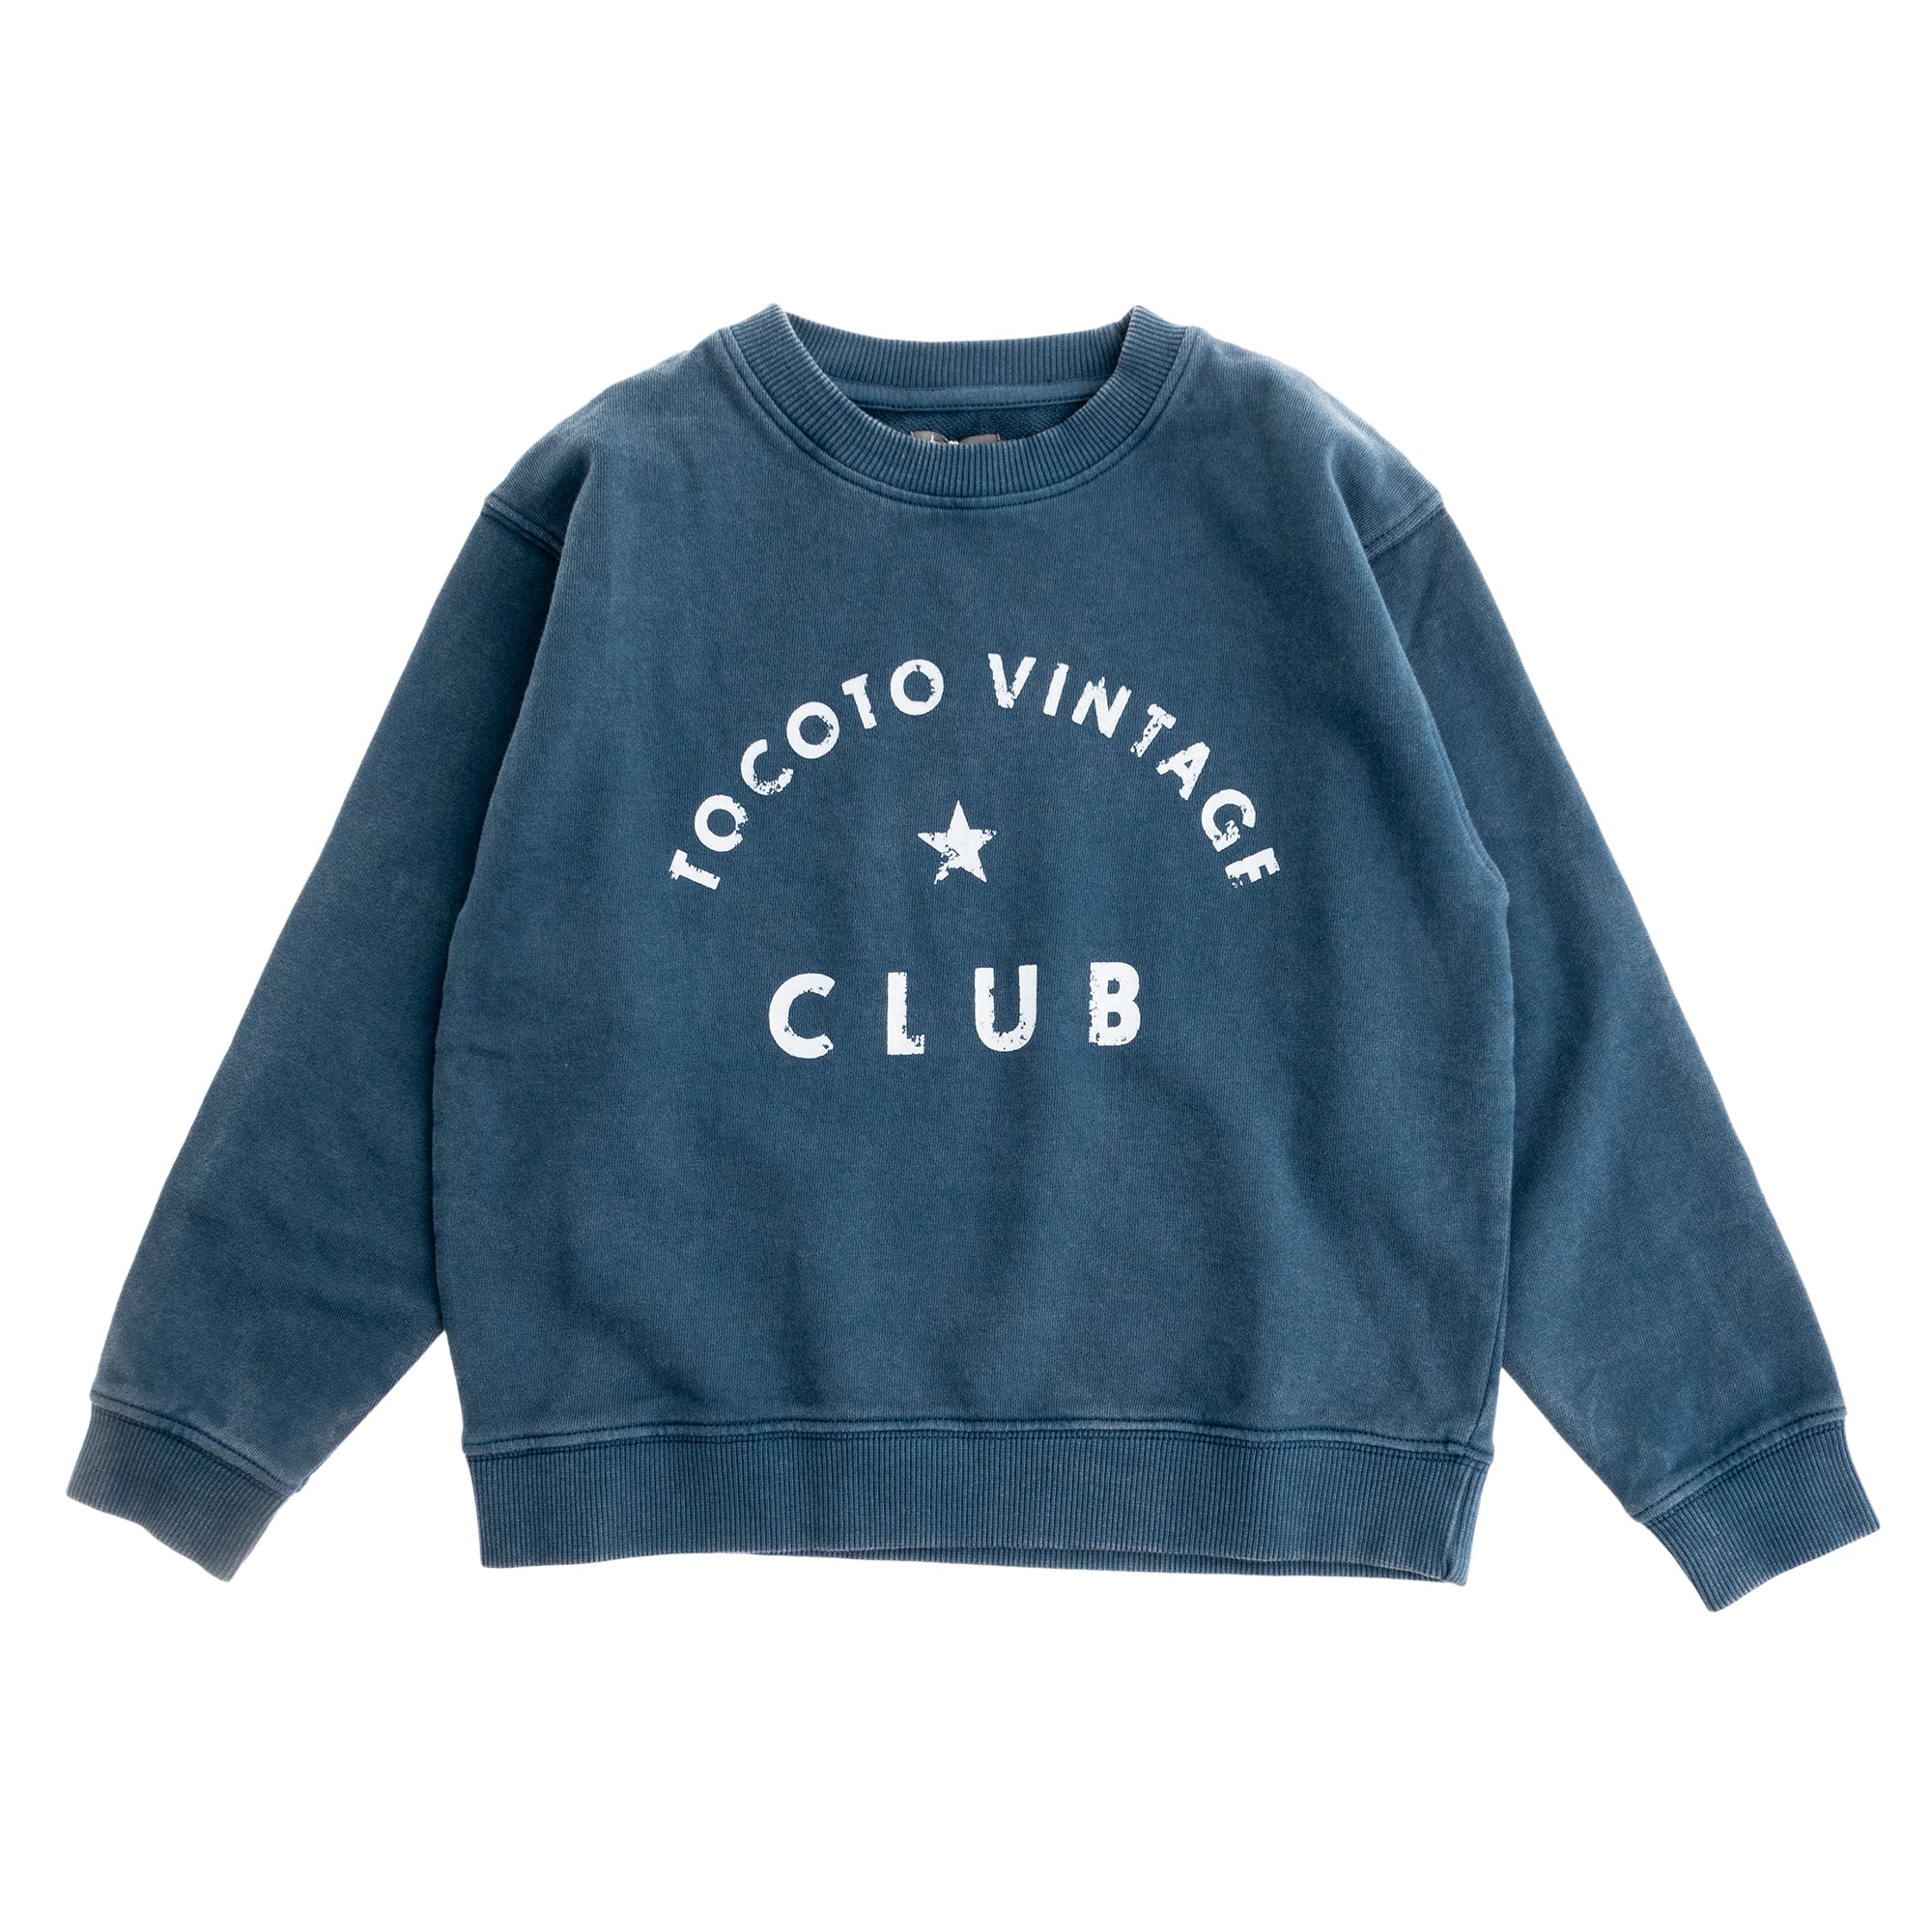 Tocoto Vintage Sweatshirt "Tocoto Vintage Club" - Blue